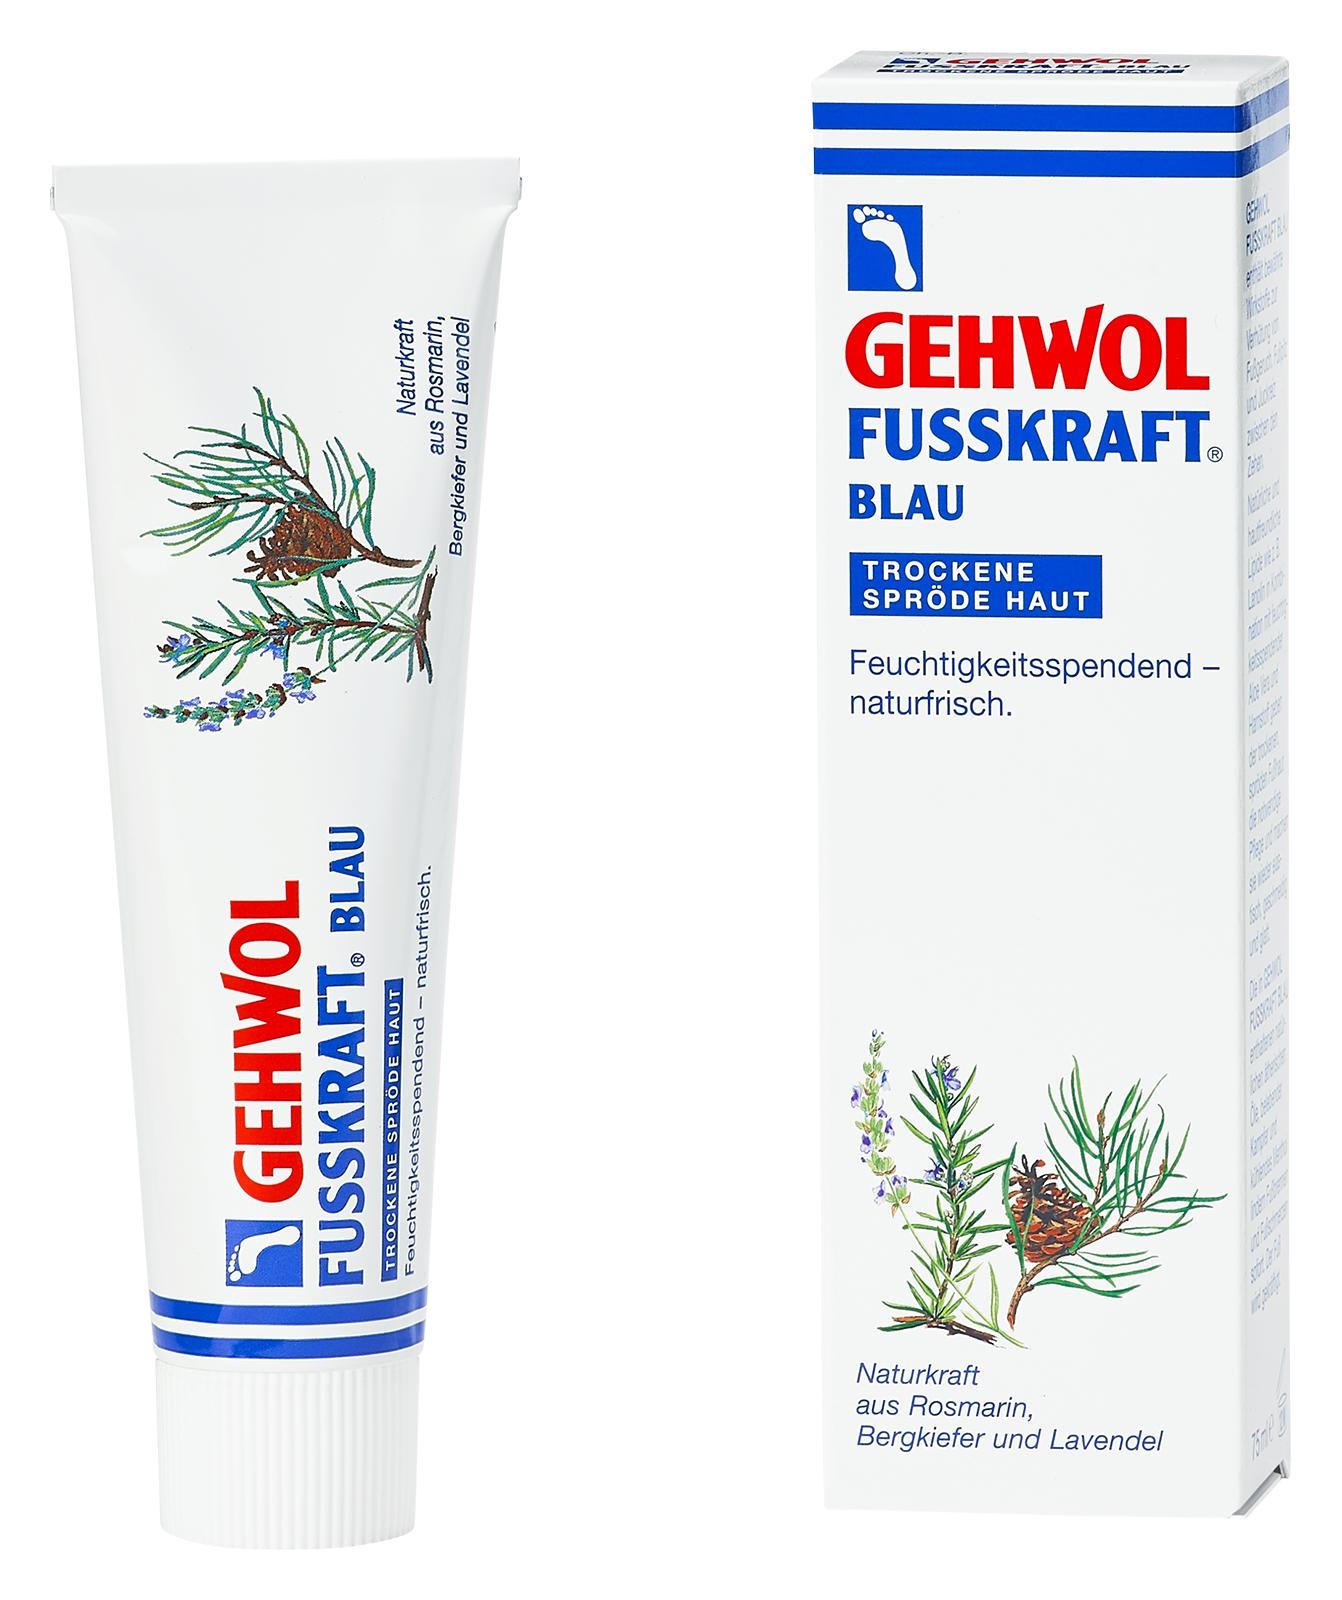 GEHWOL FUSSKRAFT BLAU | 6x 75 ml (450 ml)